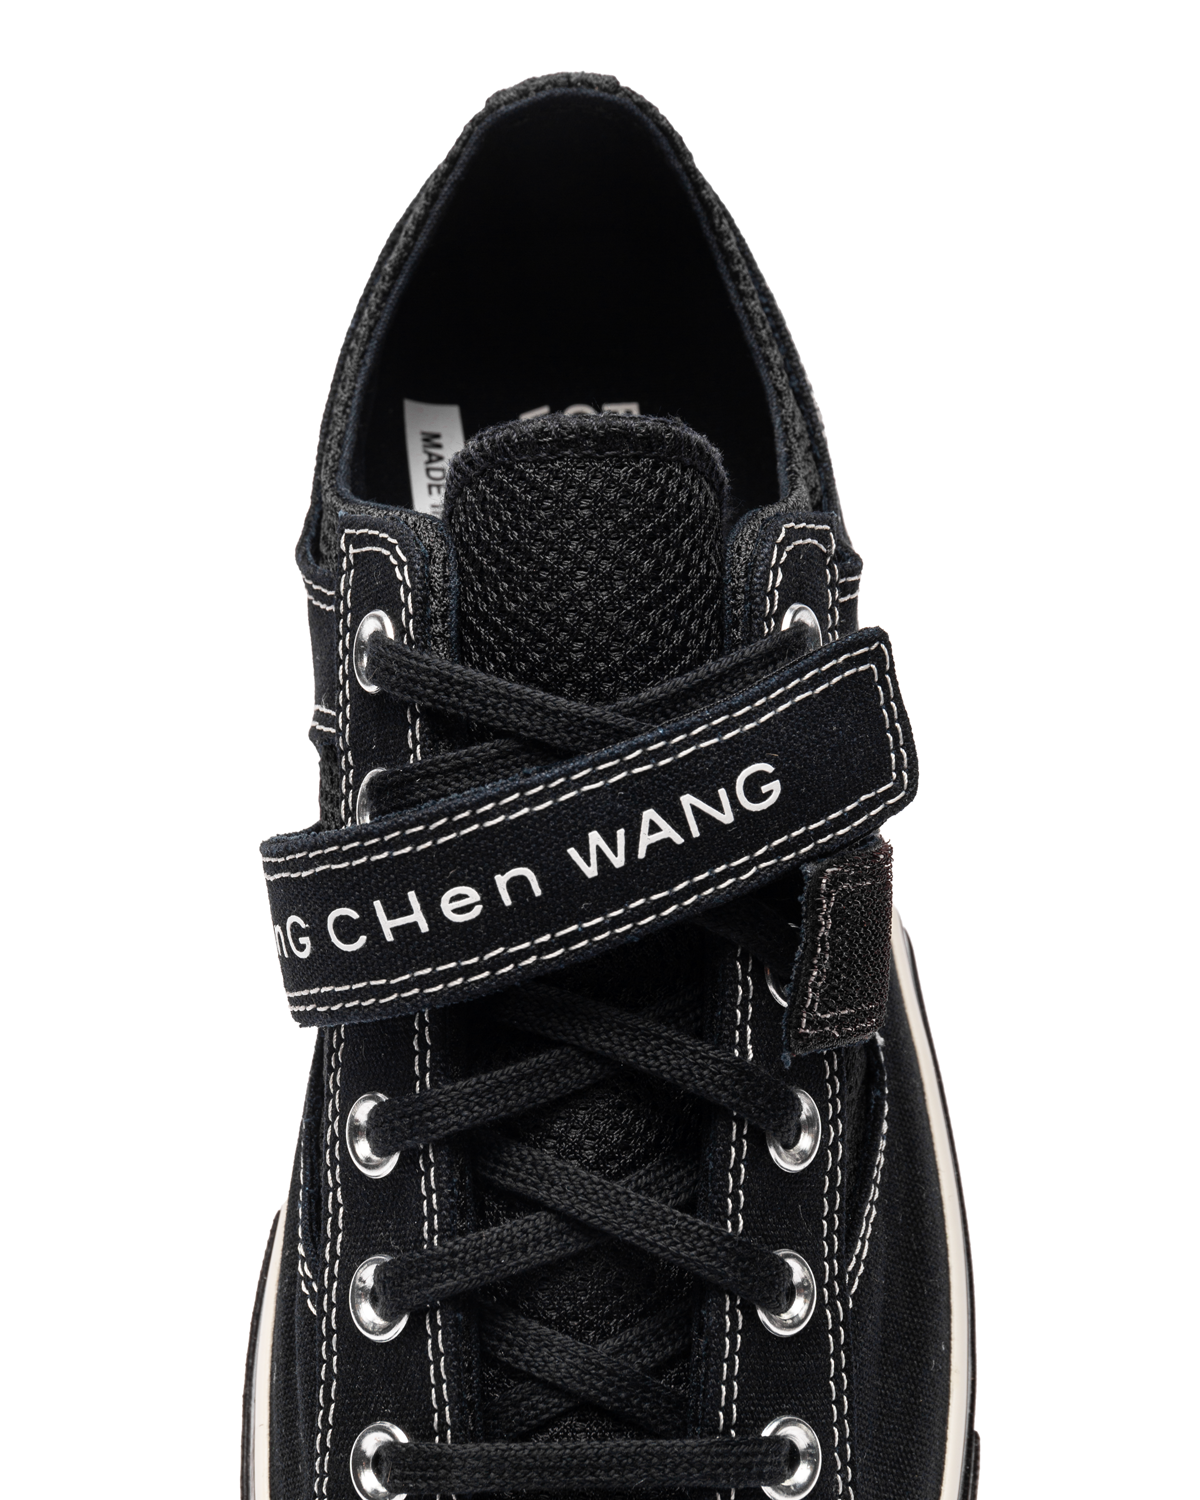 Feng Chen Wang x Chuck 70 2-in-1 Ox 'Black'